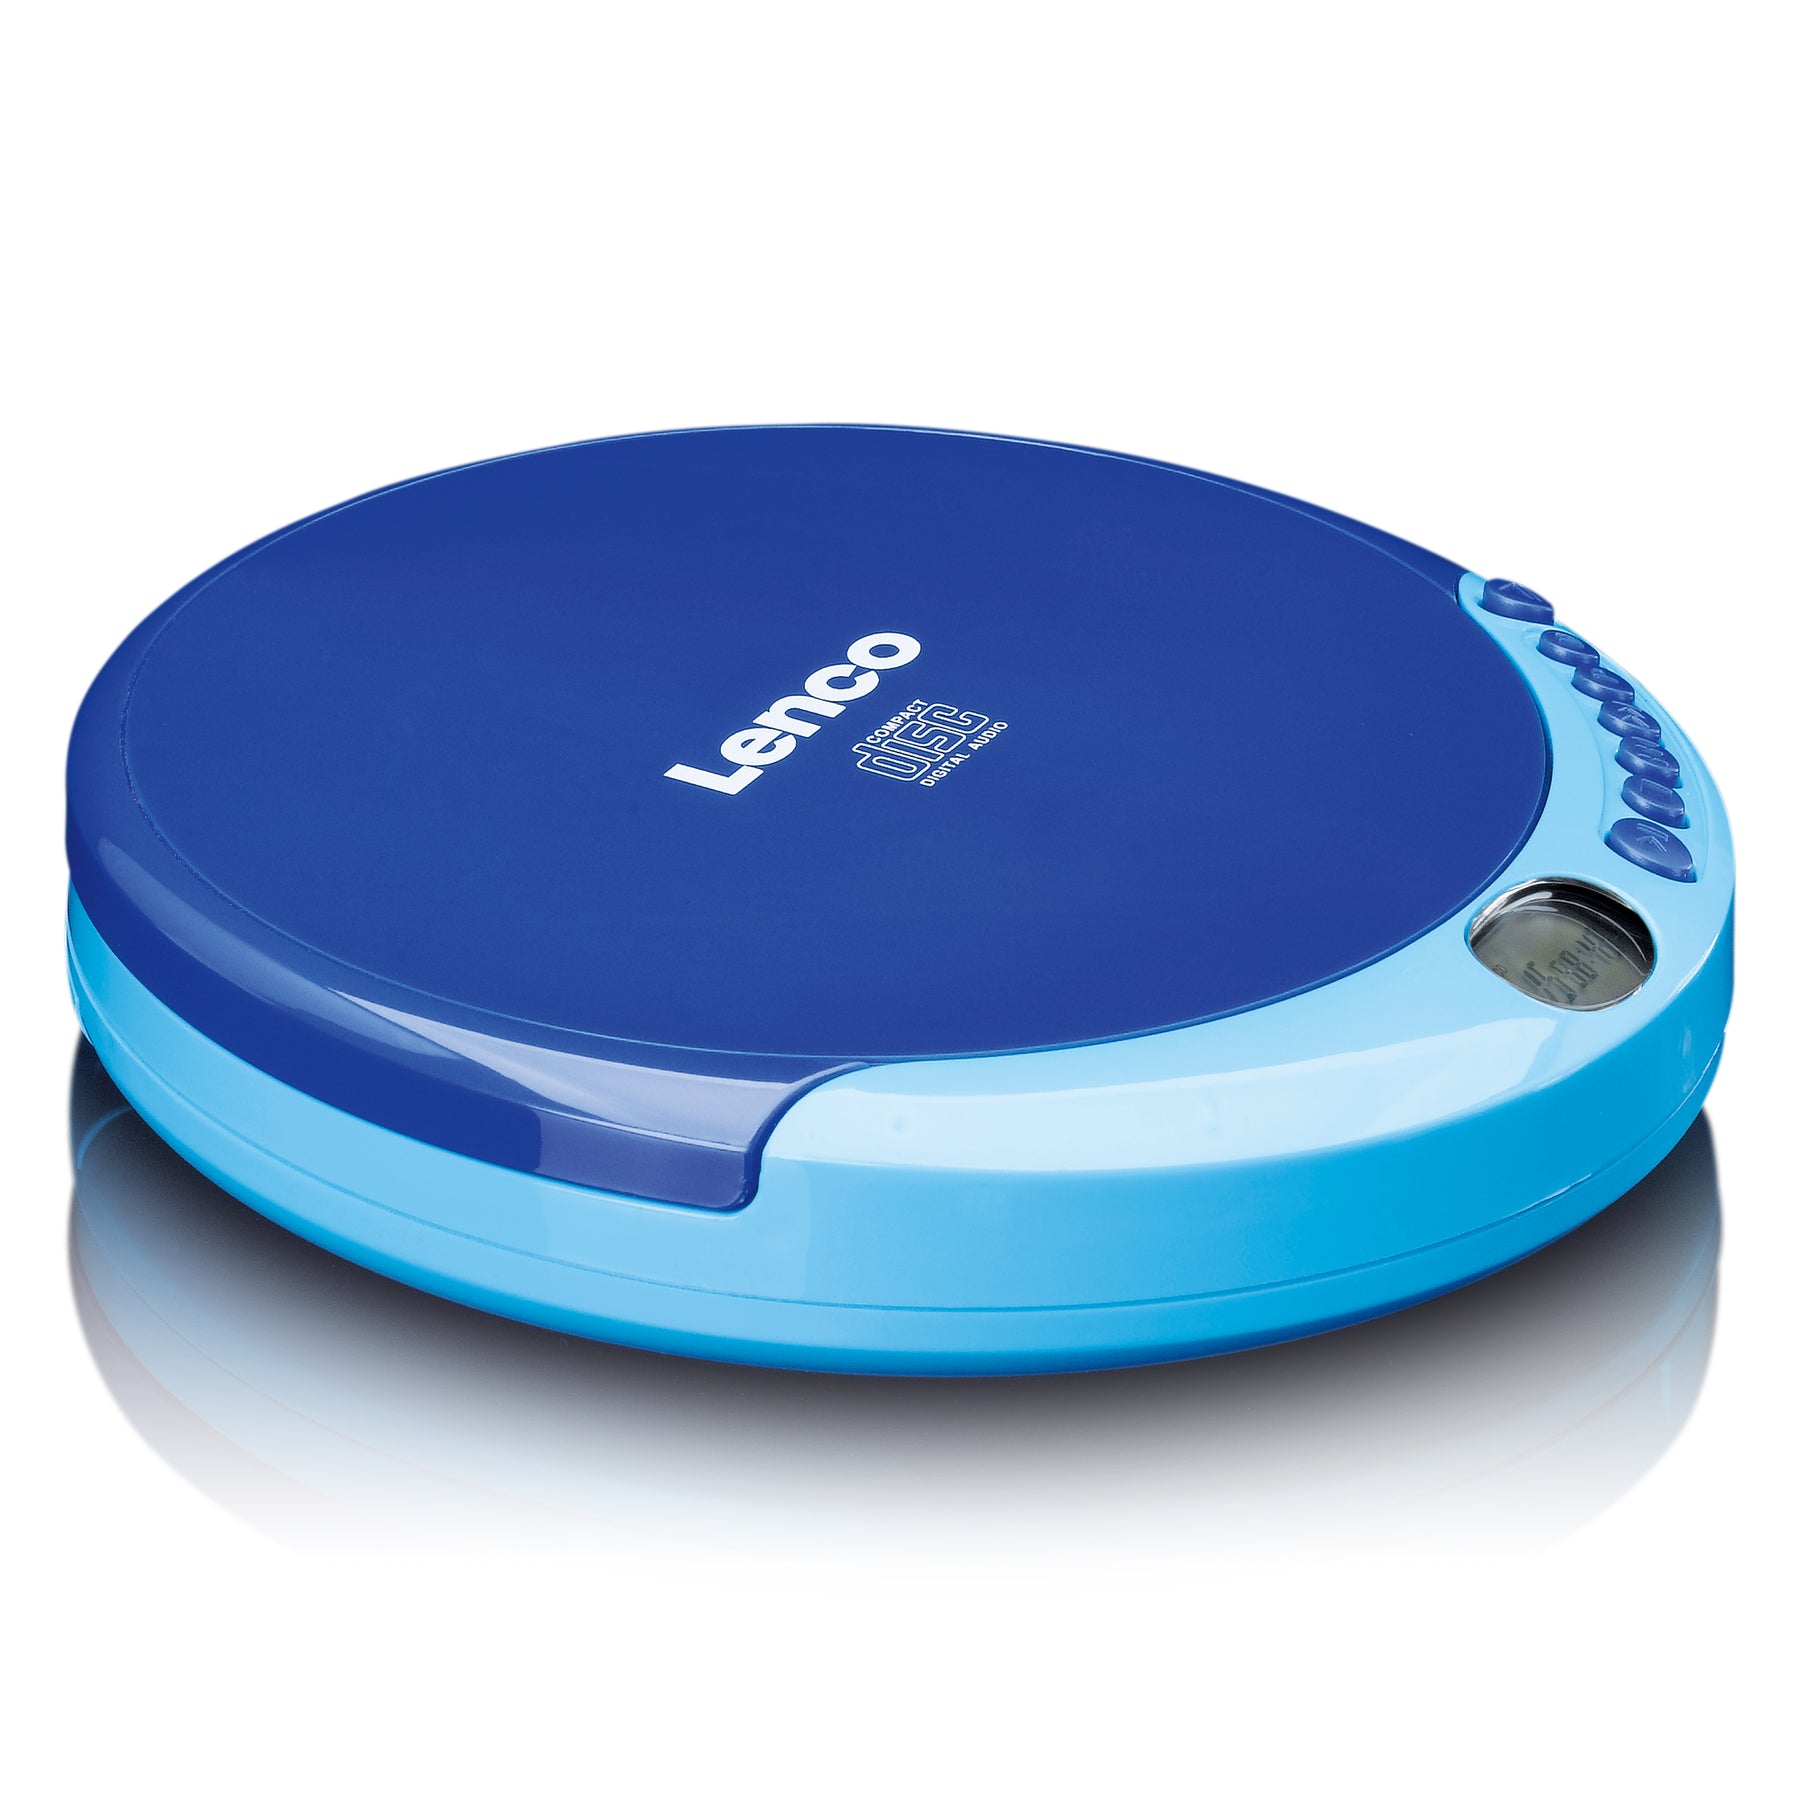 LENCO CD-011BU - Portable CD player - Blue – Lenco-Catalog